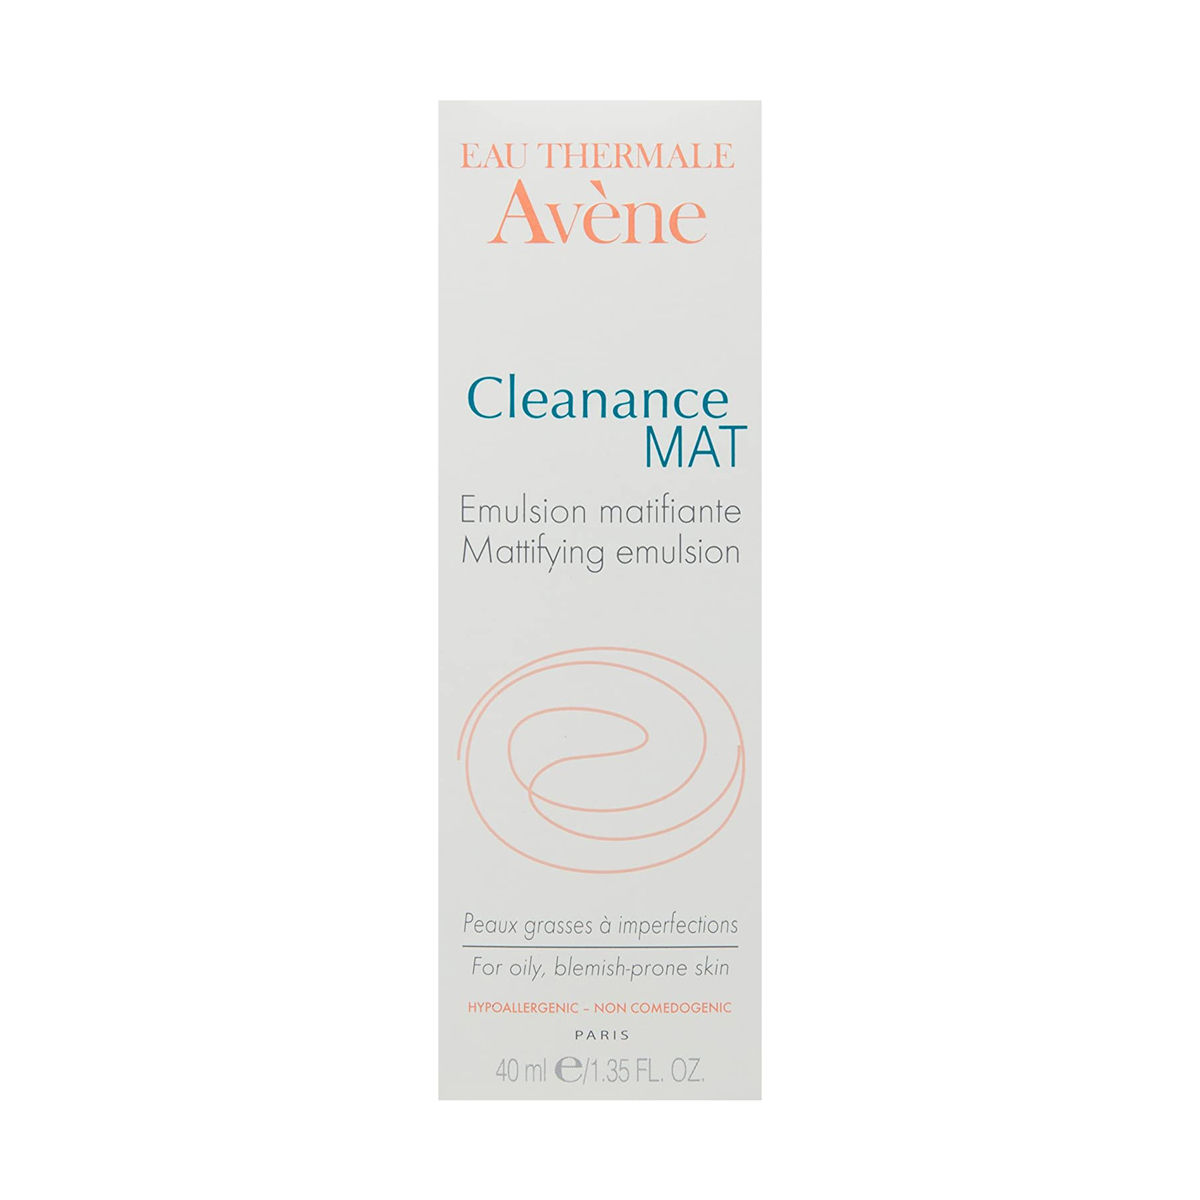 Avene Cleanance Mat Emulsion, 40 ml, Pack of 1 